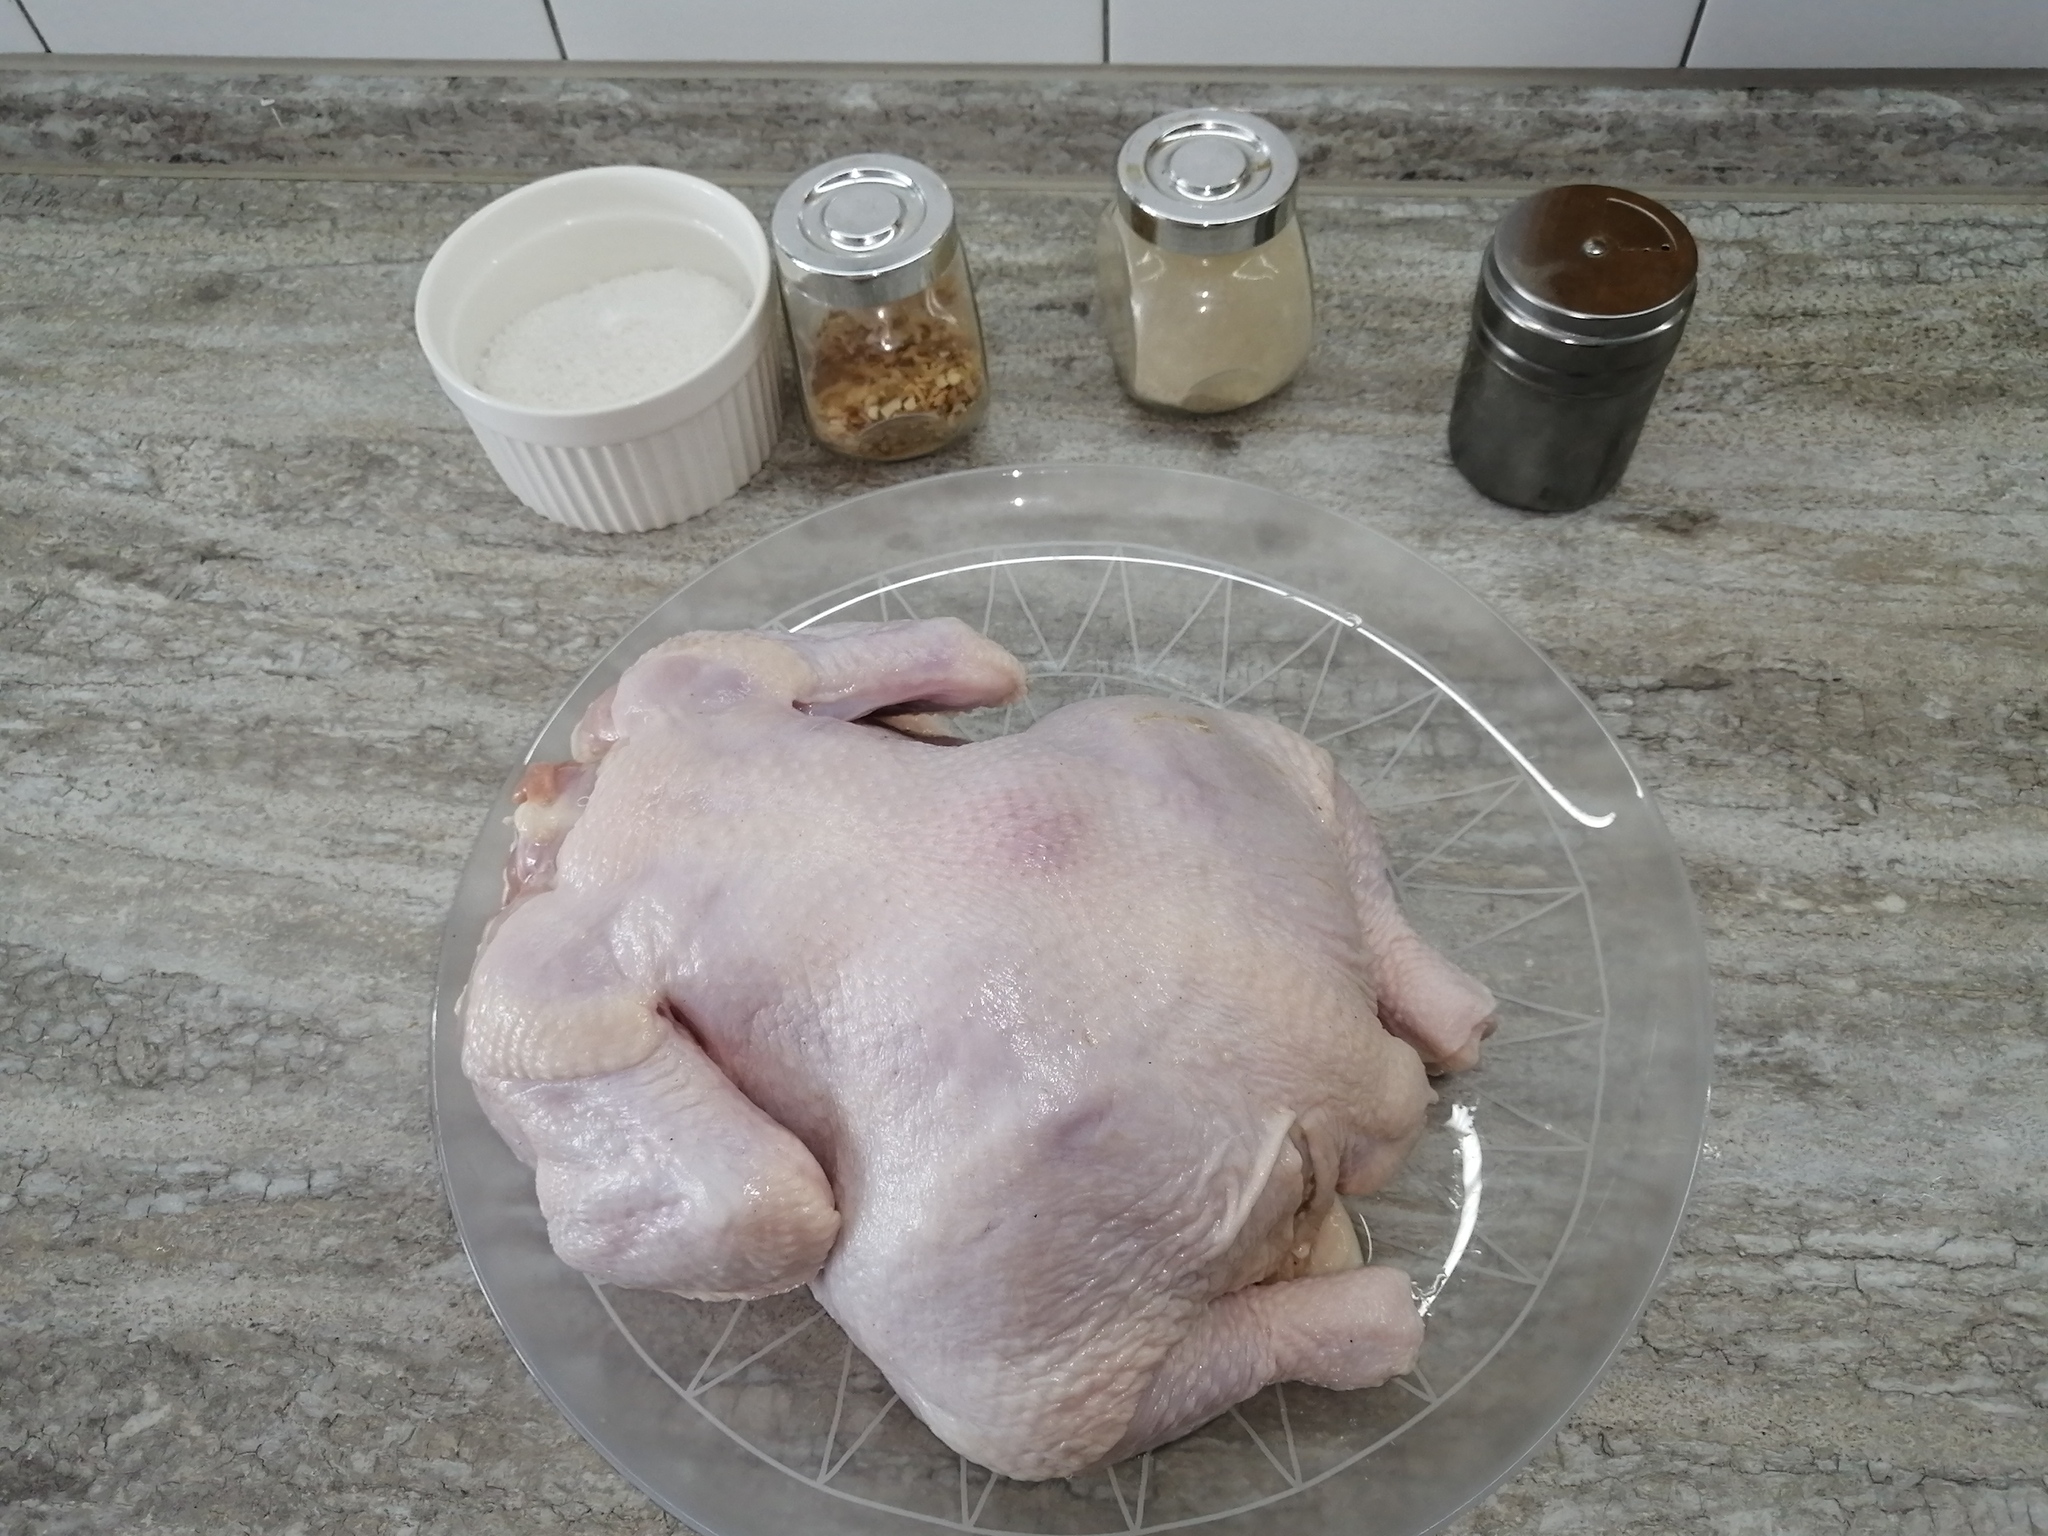 10 рецептов тушёной курицы, которая соберёт за столом всю семью